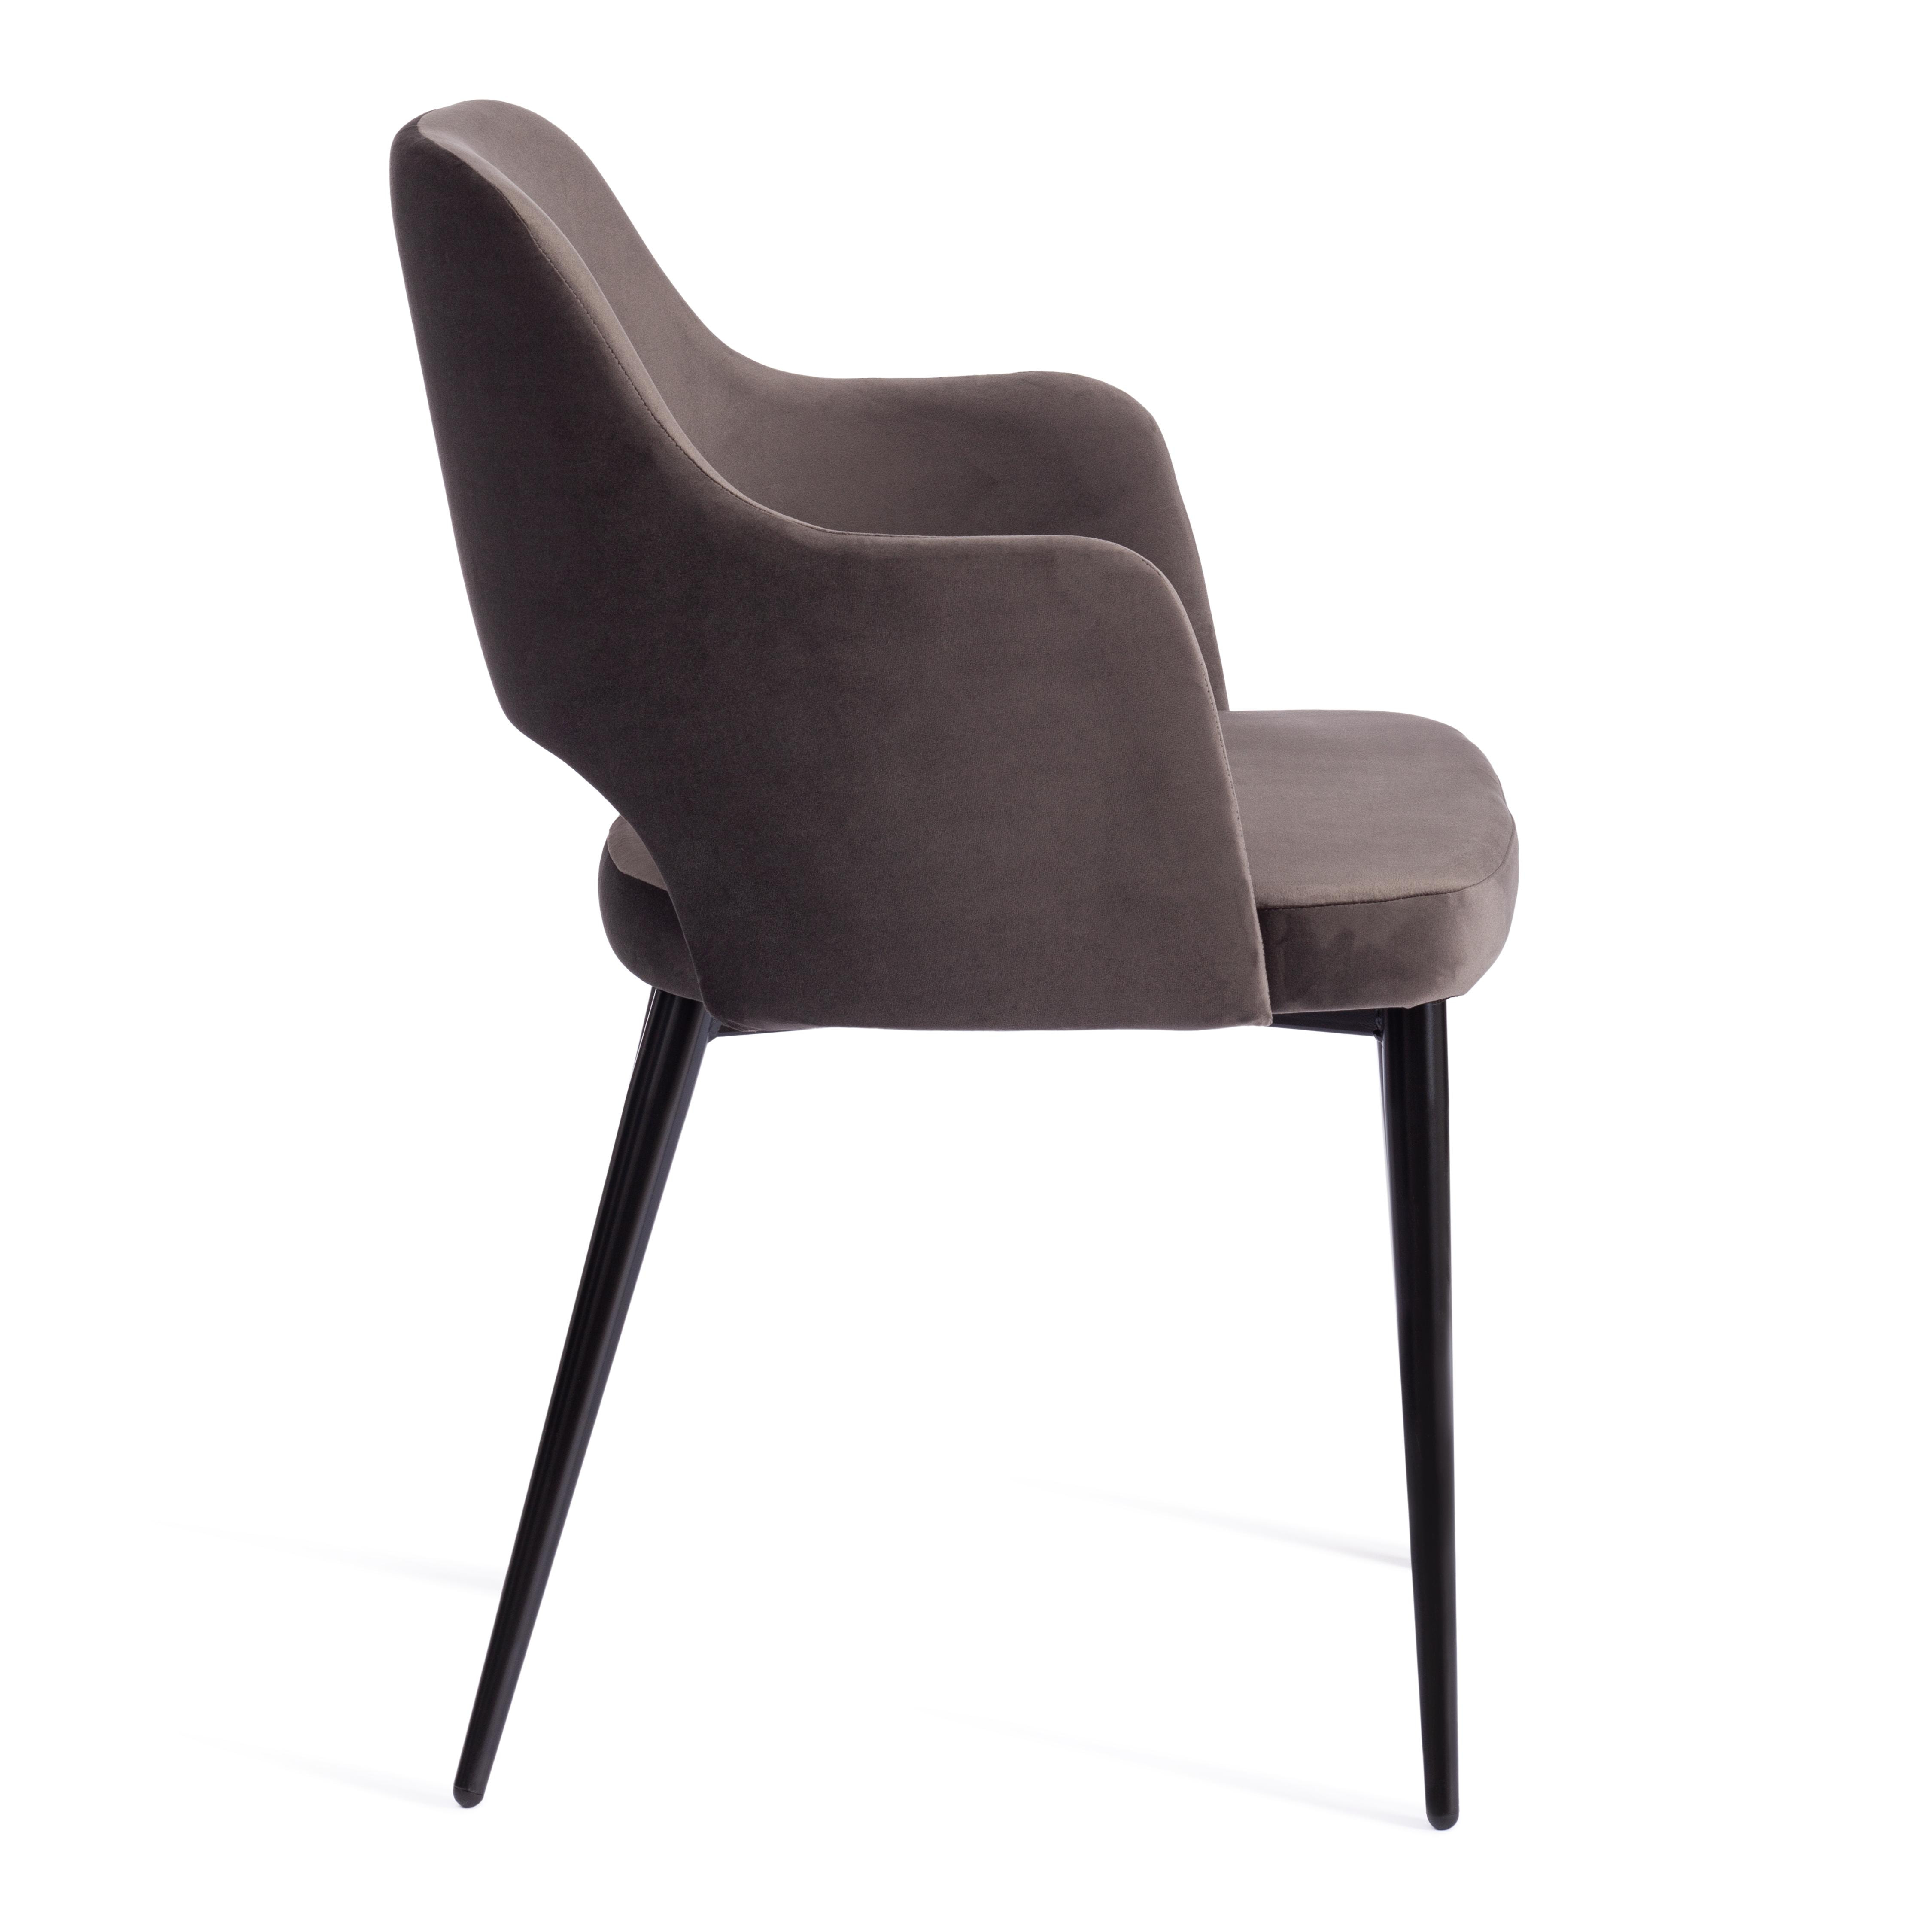 Кресло VALKYRIA 2 (mod. 718) ткань/металл, 55х55х80 см, высота до сиденья 48 см, темно-серый barkhat 14/черный